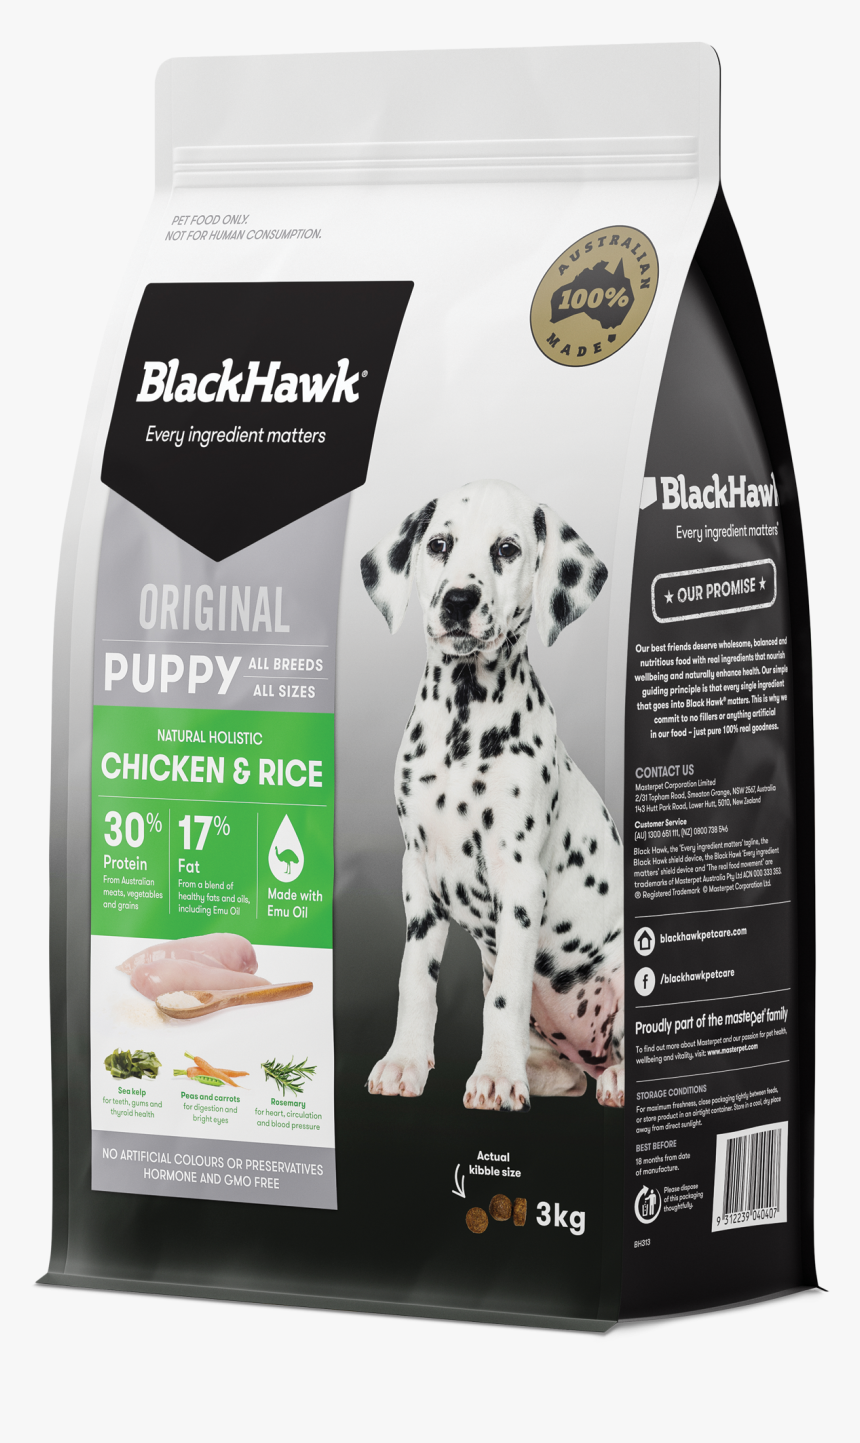 Transparent Blackhawk Png - Black Hawk Dog Food 20kg, Png Download, Free Download